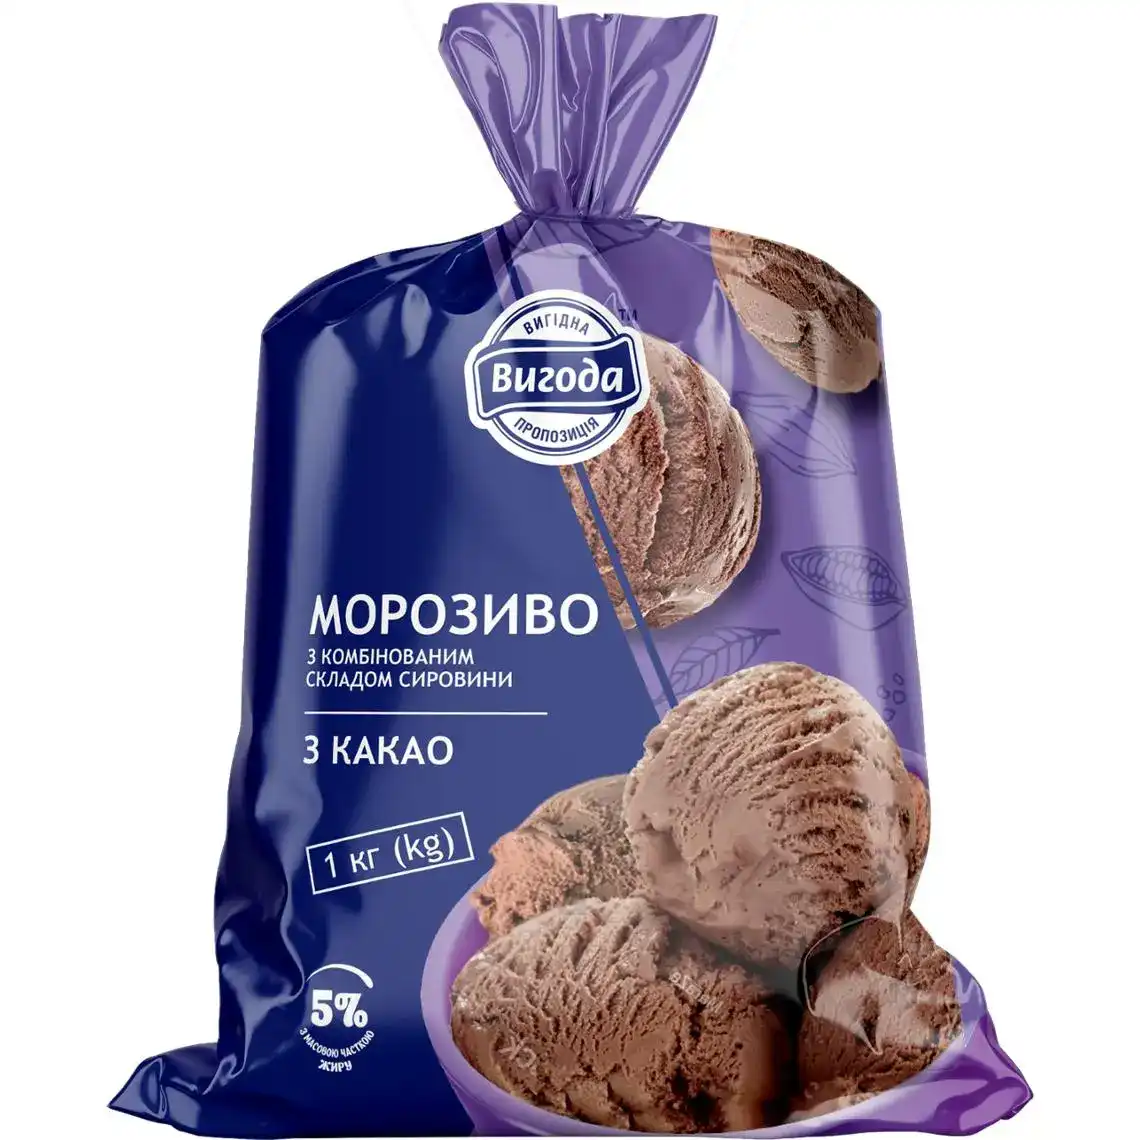 Фото 1 - Морозиво Вигода з какао 1 кг